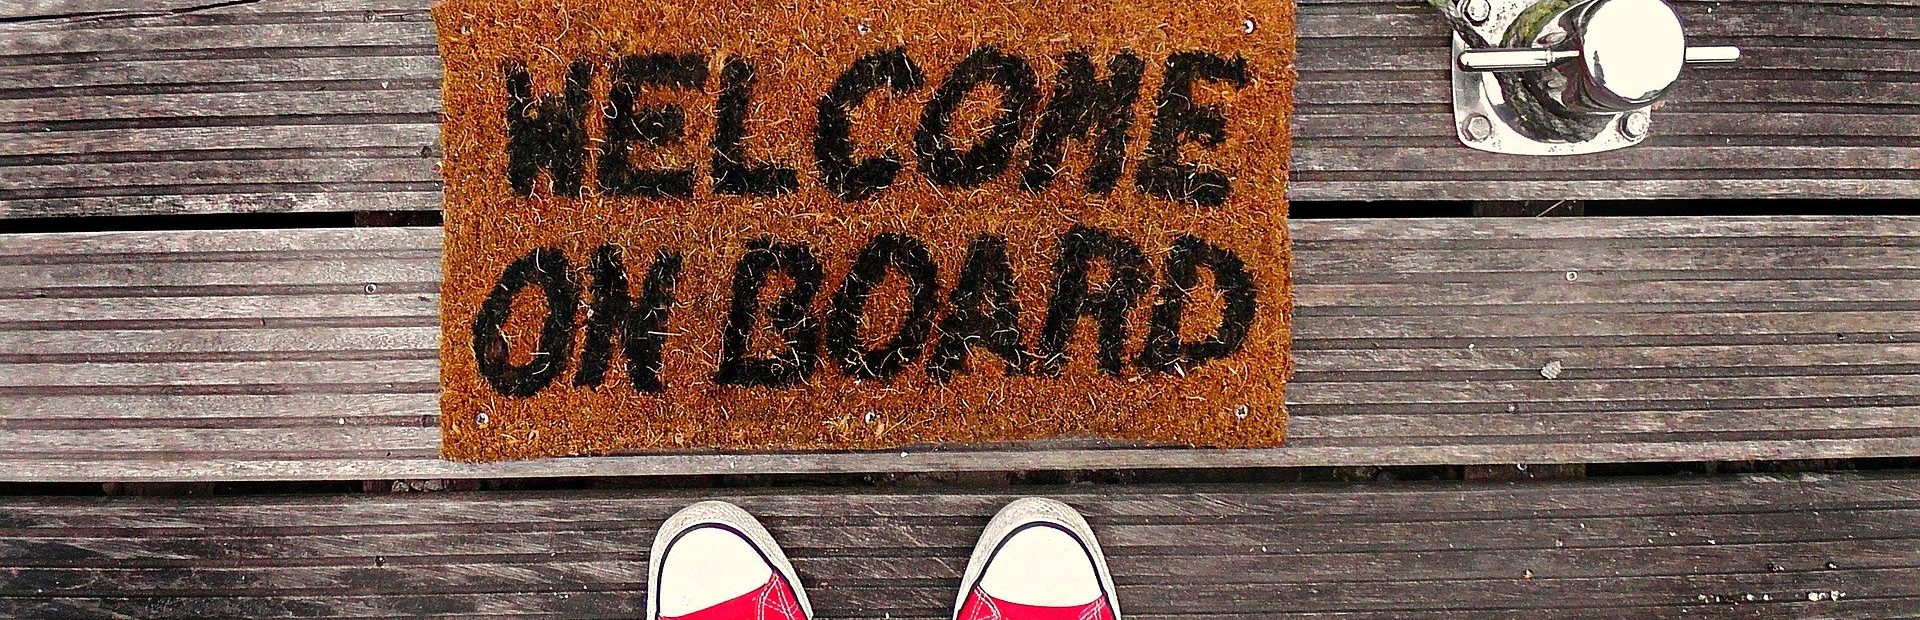 Digitales Onboarding: Ein Mensch steht vor einer Fußmatte mit der Aufschrift "Welcome on Board"